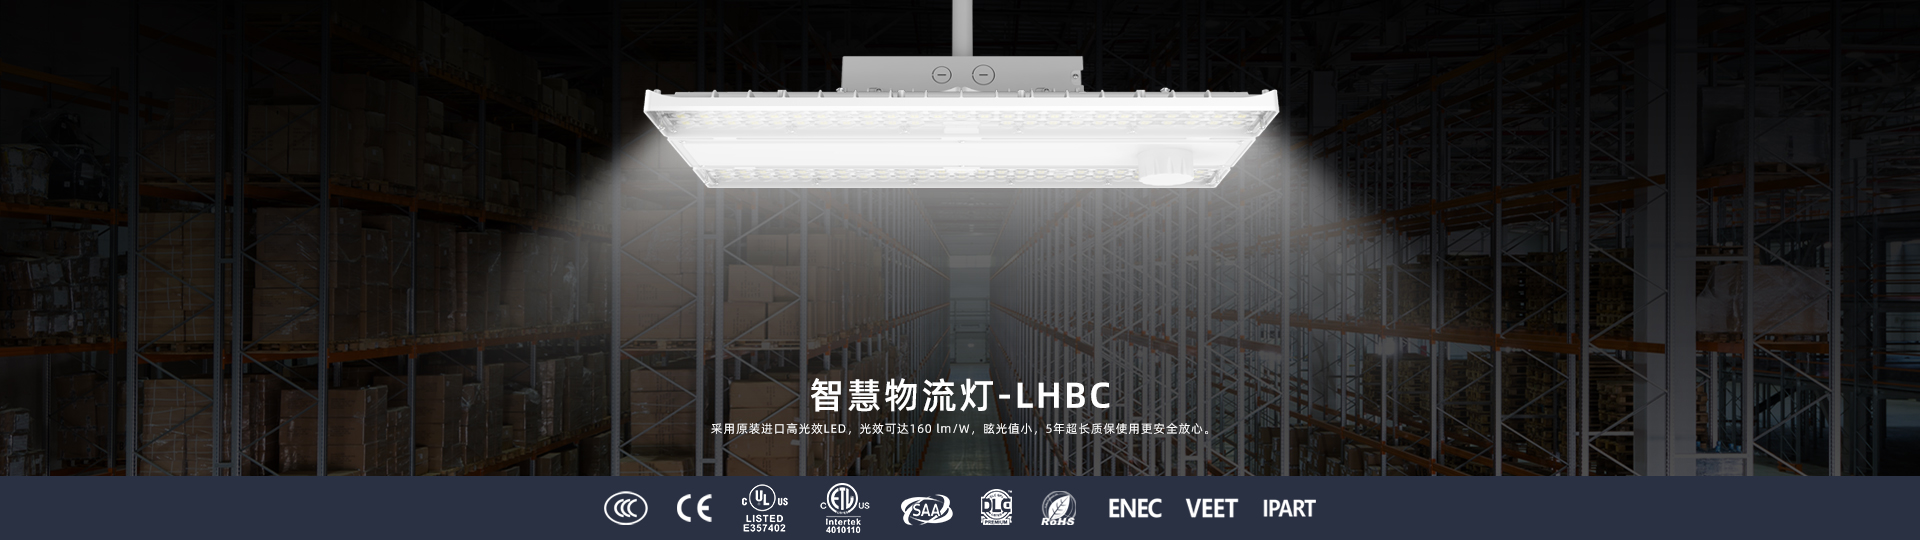 LED大功率照明-鑫盛洋光电